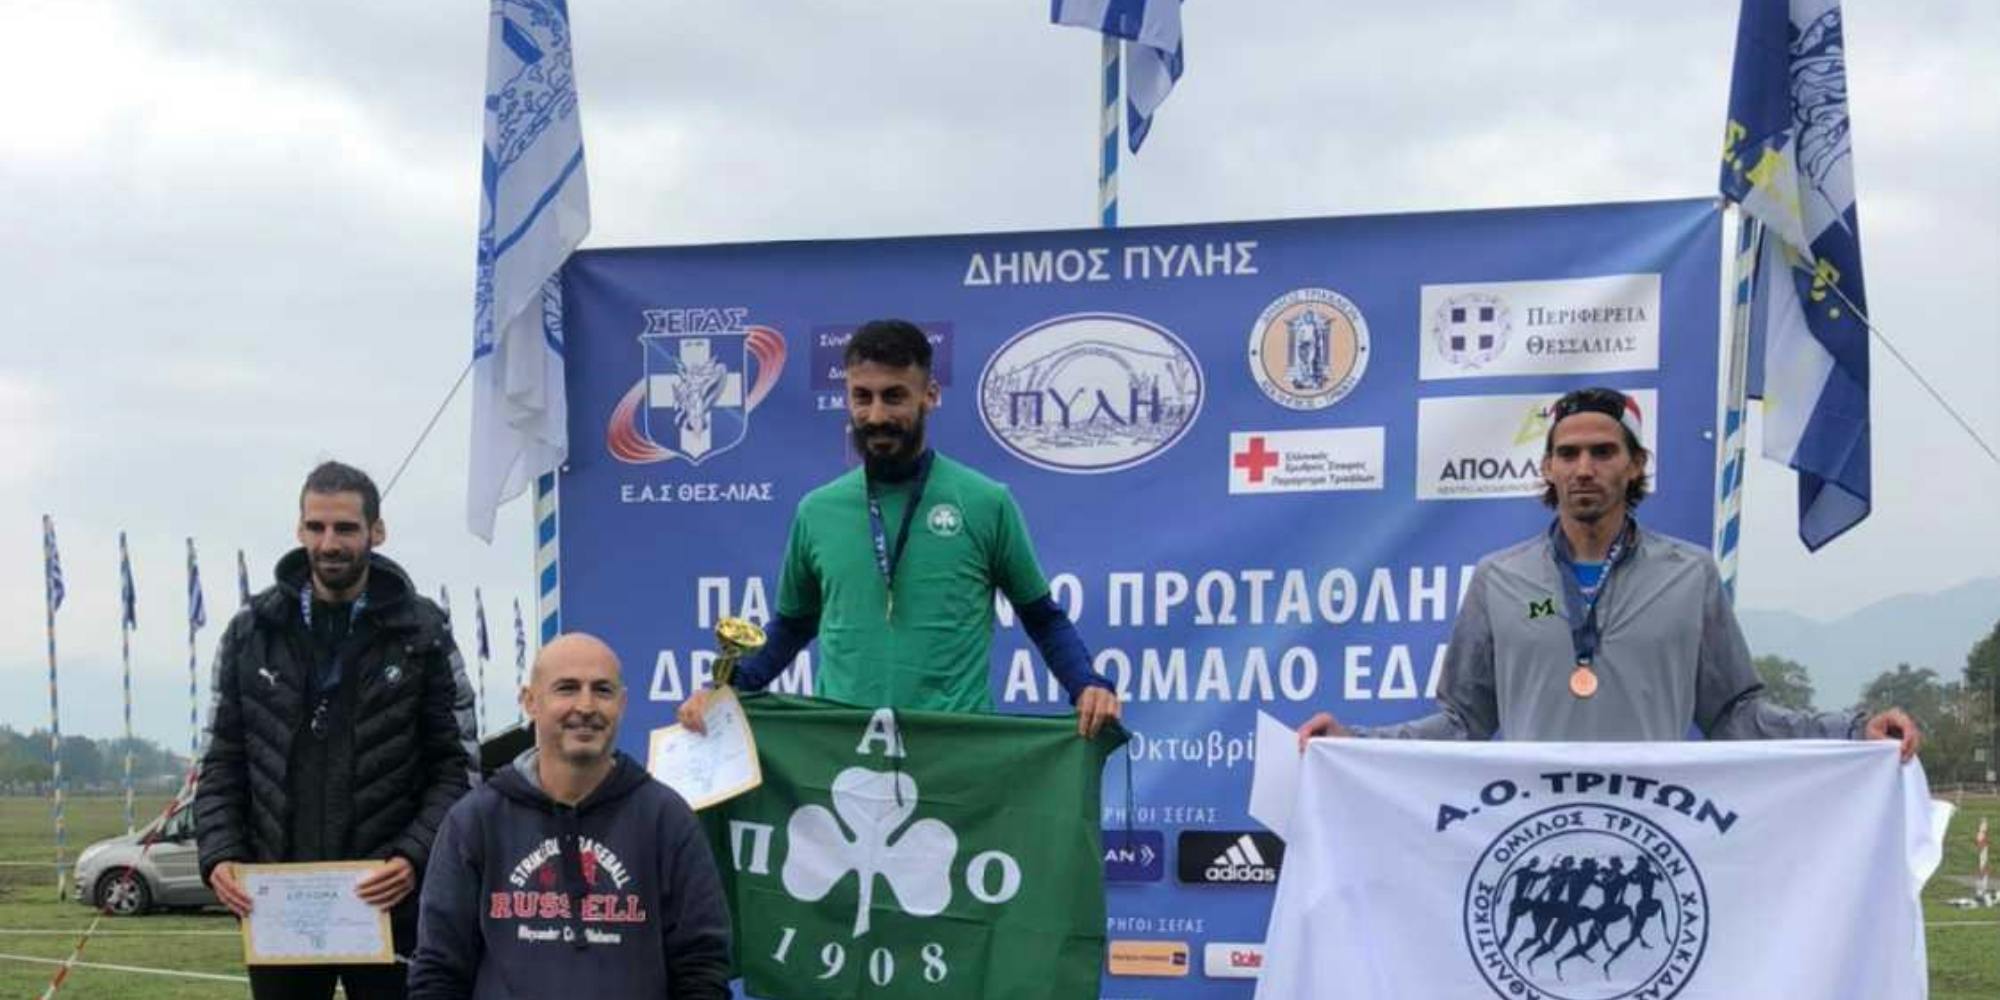 Εξαιρετικός ο Γκελαούζος, κατέκτησε το πρωτάθλημα Ελλάδος ανωμάλου δρόμου